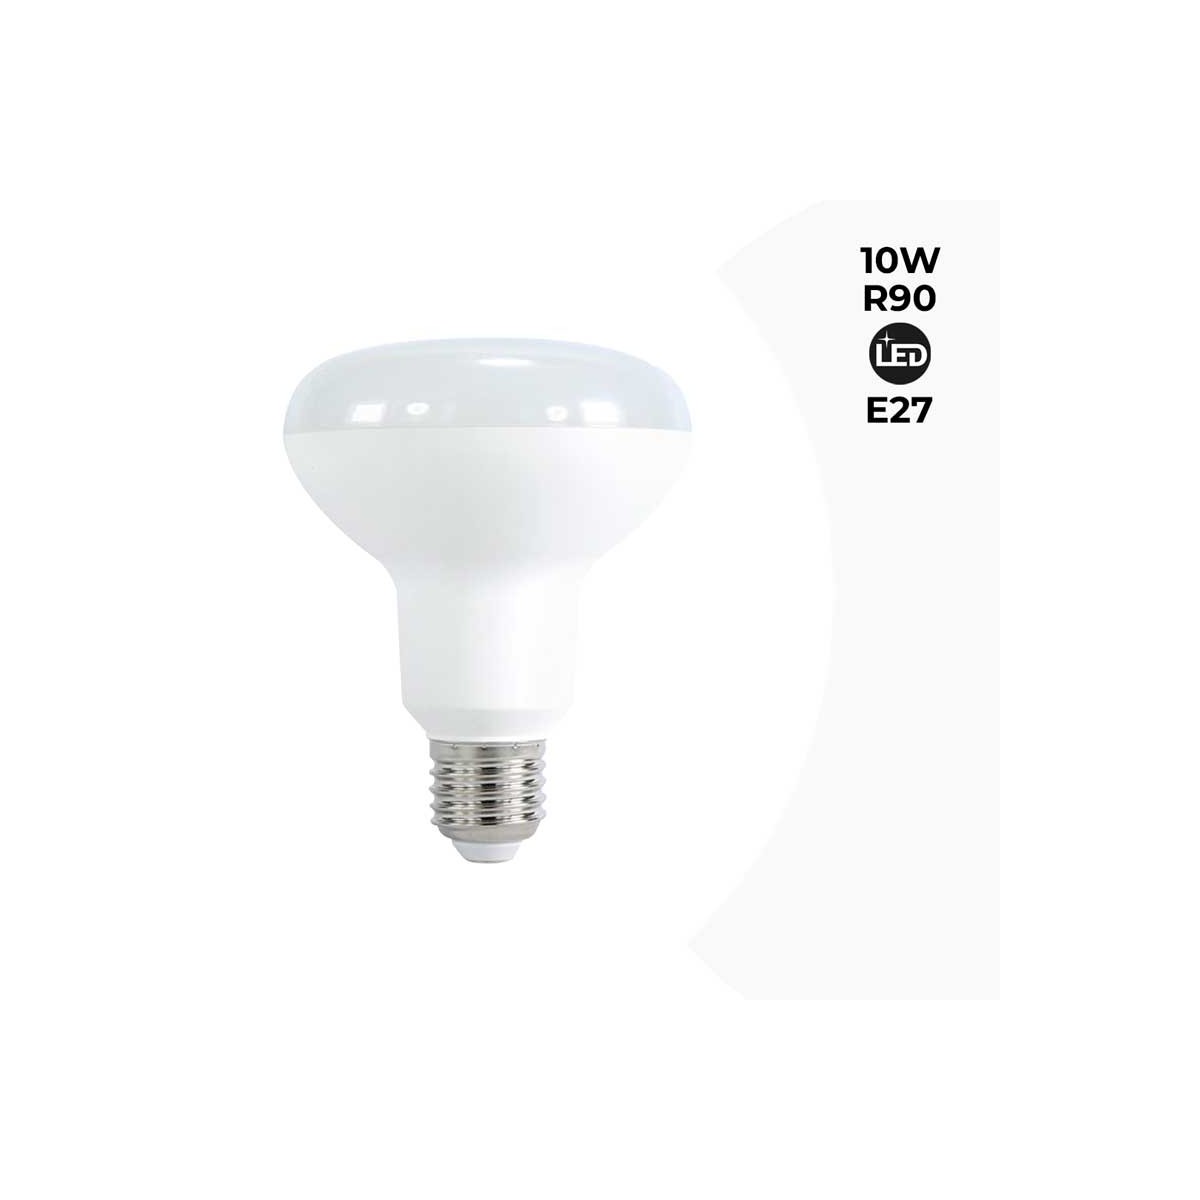 LED R90 Reflektor-Glühbirne 10W - E27